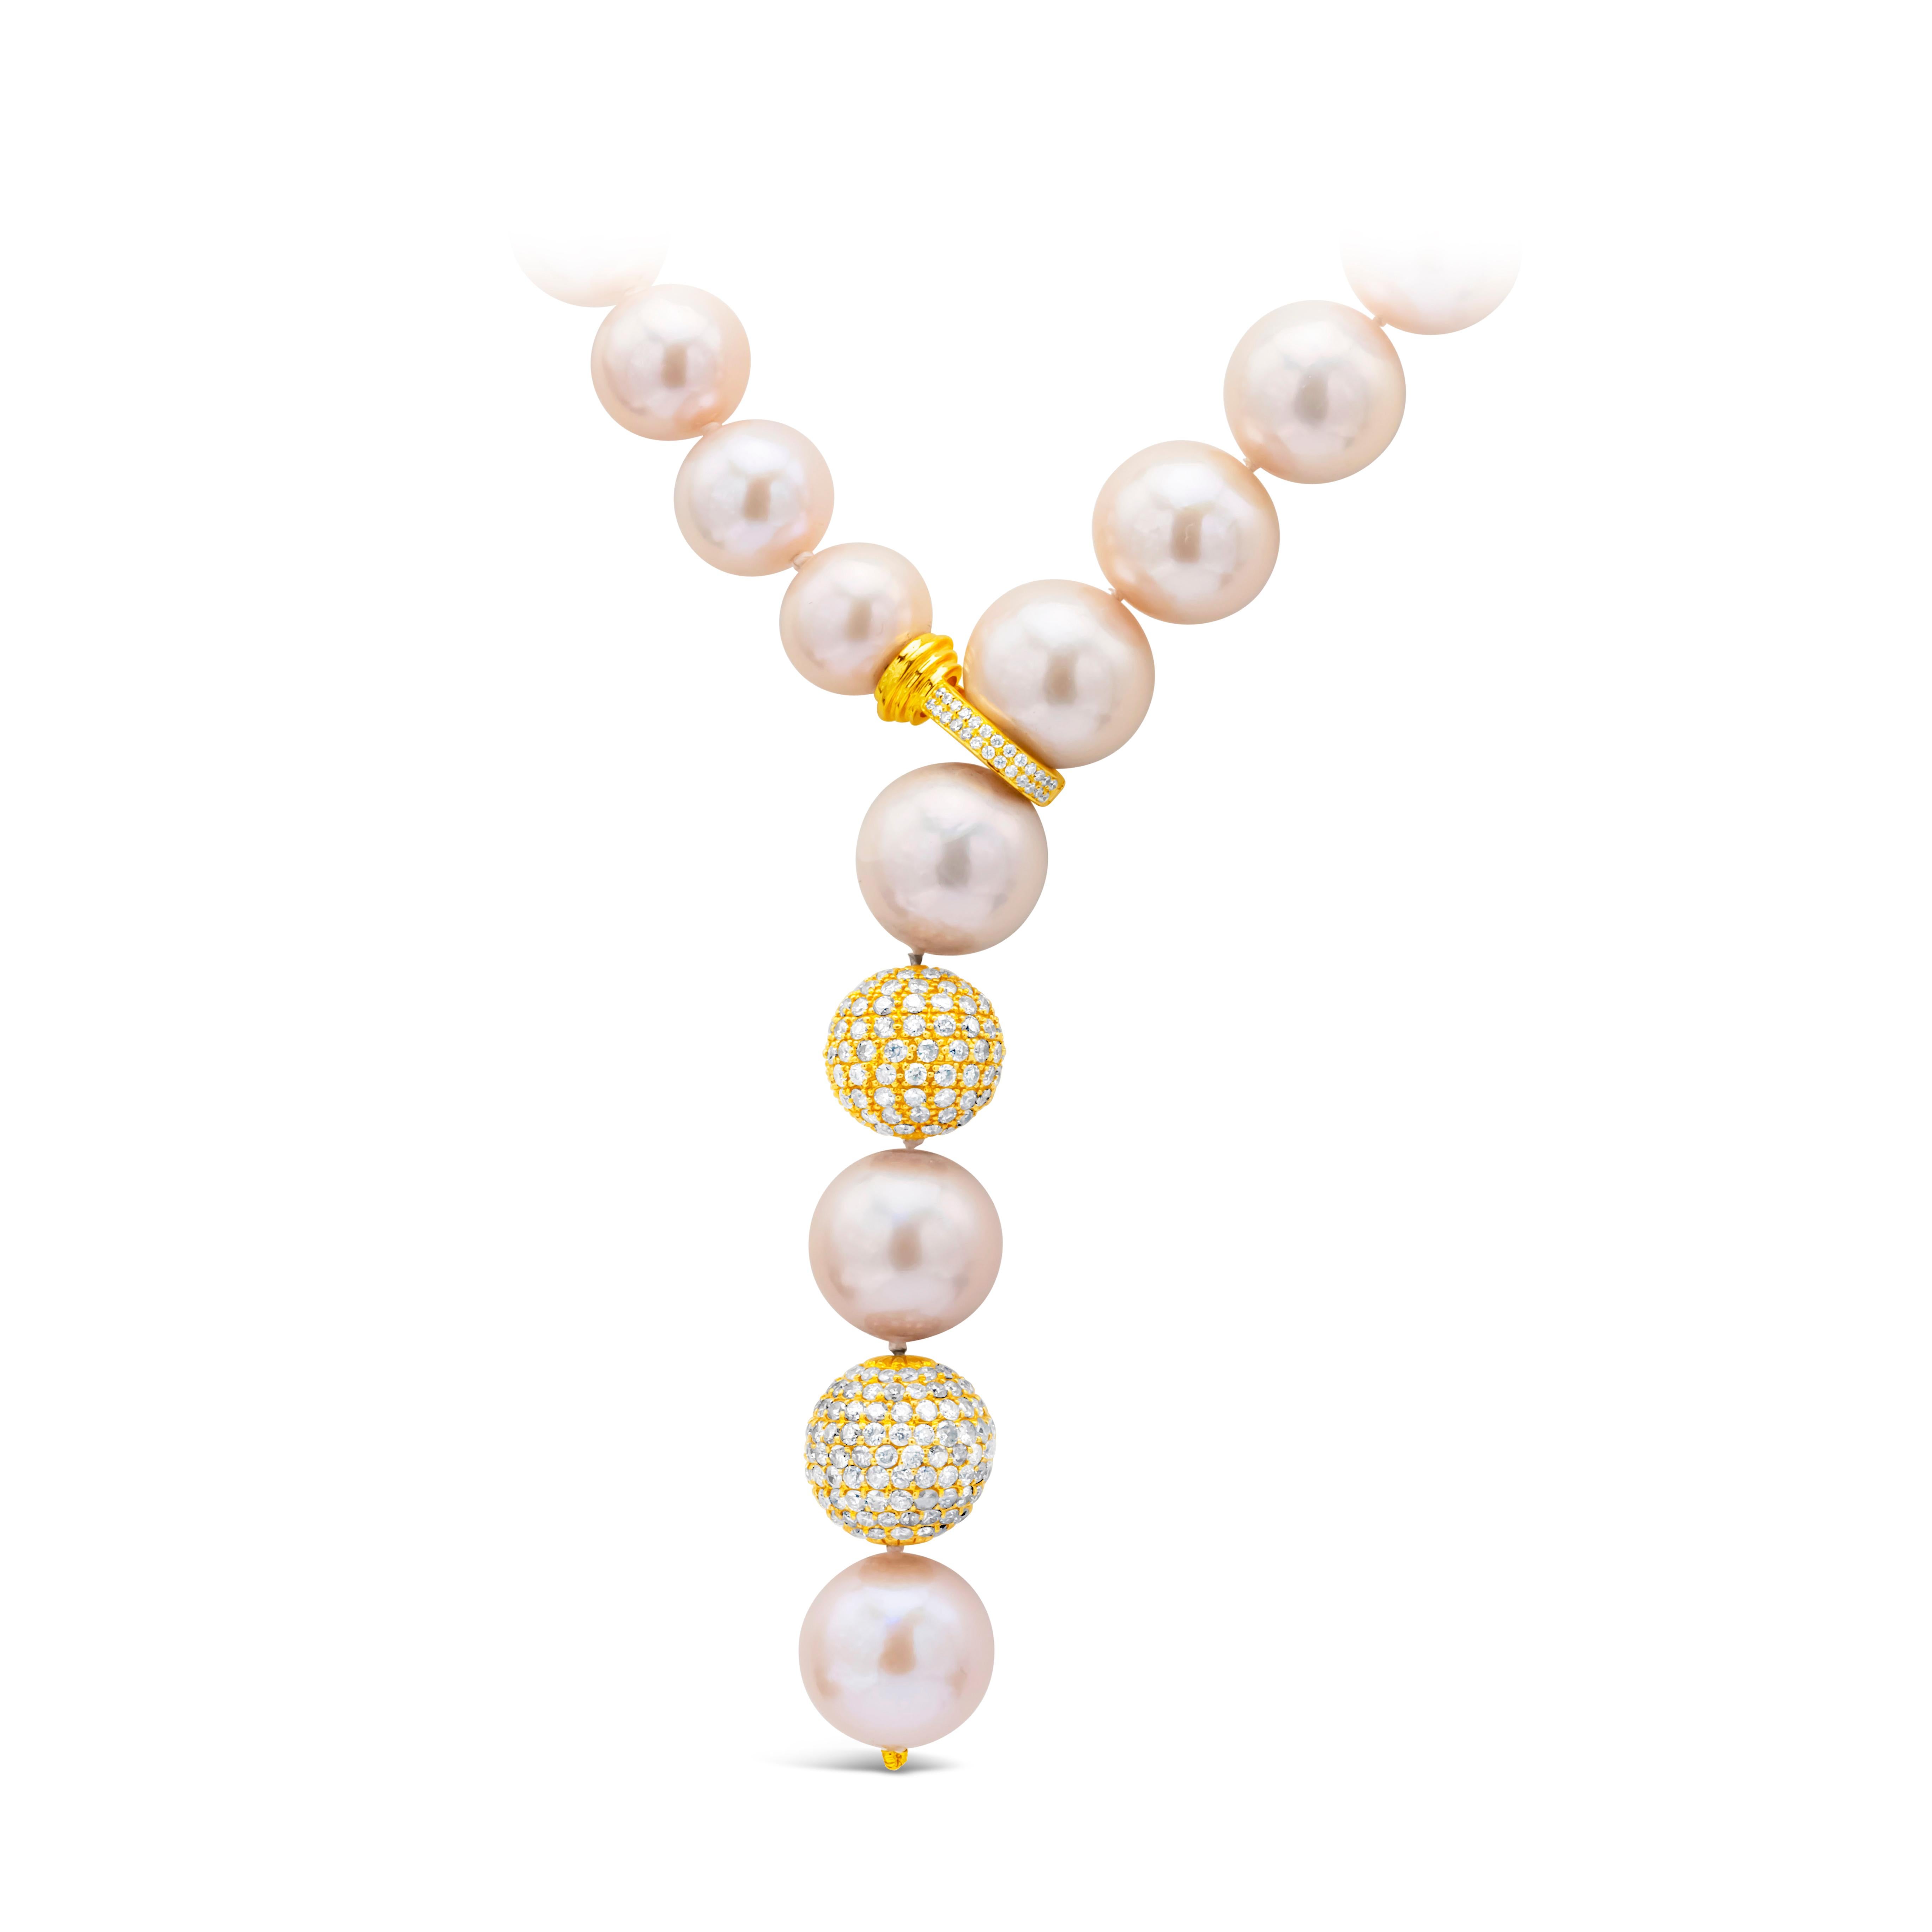 Eine wunderschöne Perlenkette mit einer 11,5-14,5 mm großen rosafarbenen Südseeperle mit Diamantverschluss und 2 mit Diamanten besetzten Kugeln. Der Diamant wiegt insgesamt 4,50 Karat. Hergestellt in 18K Gelbgold.

Das Modell ist mit passenden